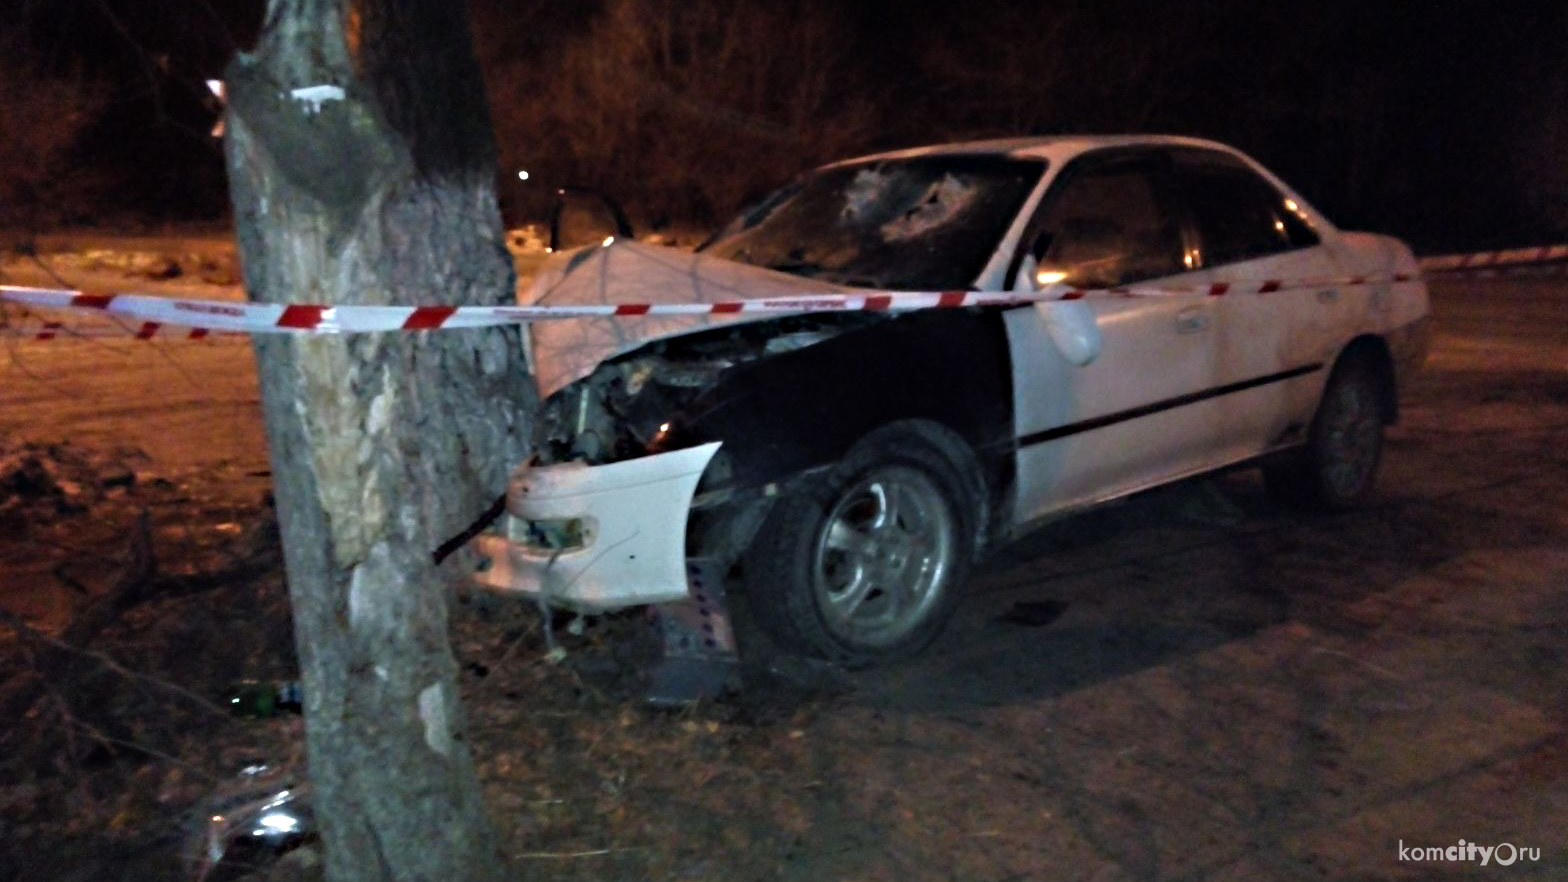 На Амурстали автомобиль врезался в дерево, три человека пострадали